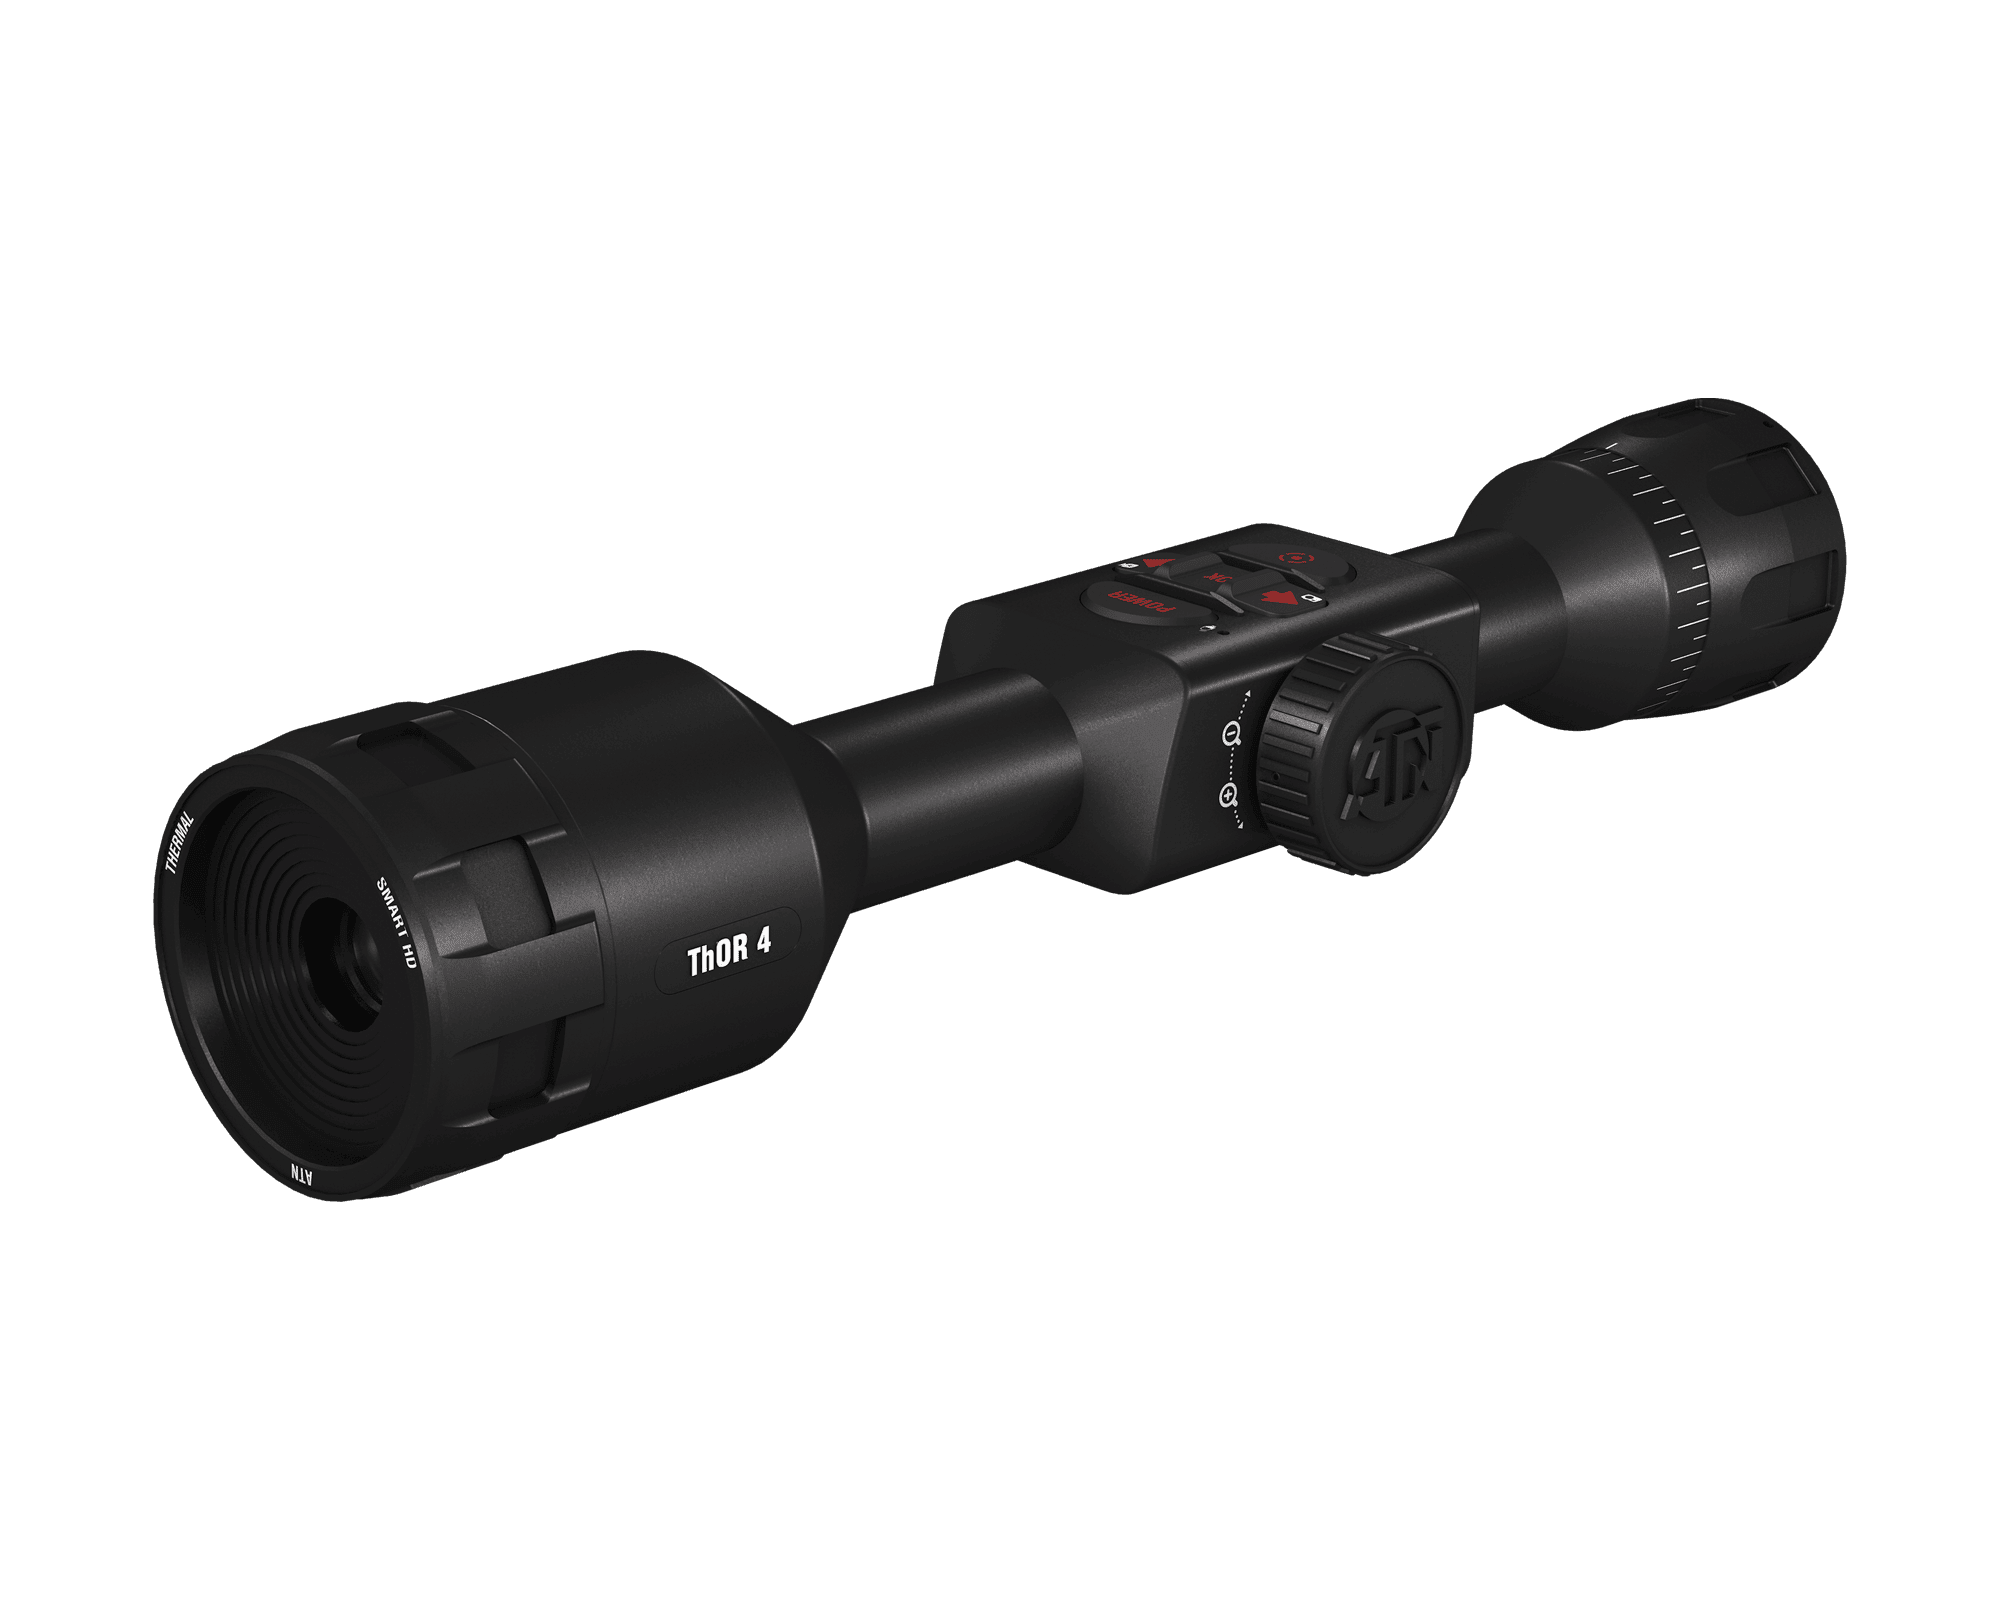 ATN - THOR 4 Series Riflescope